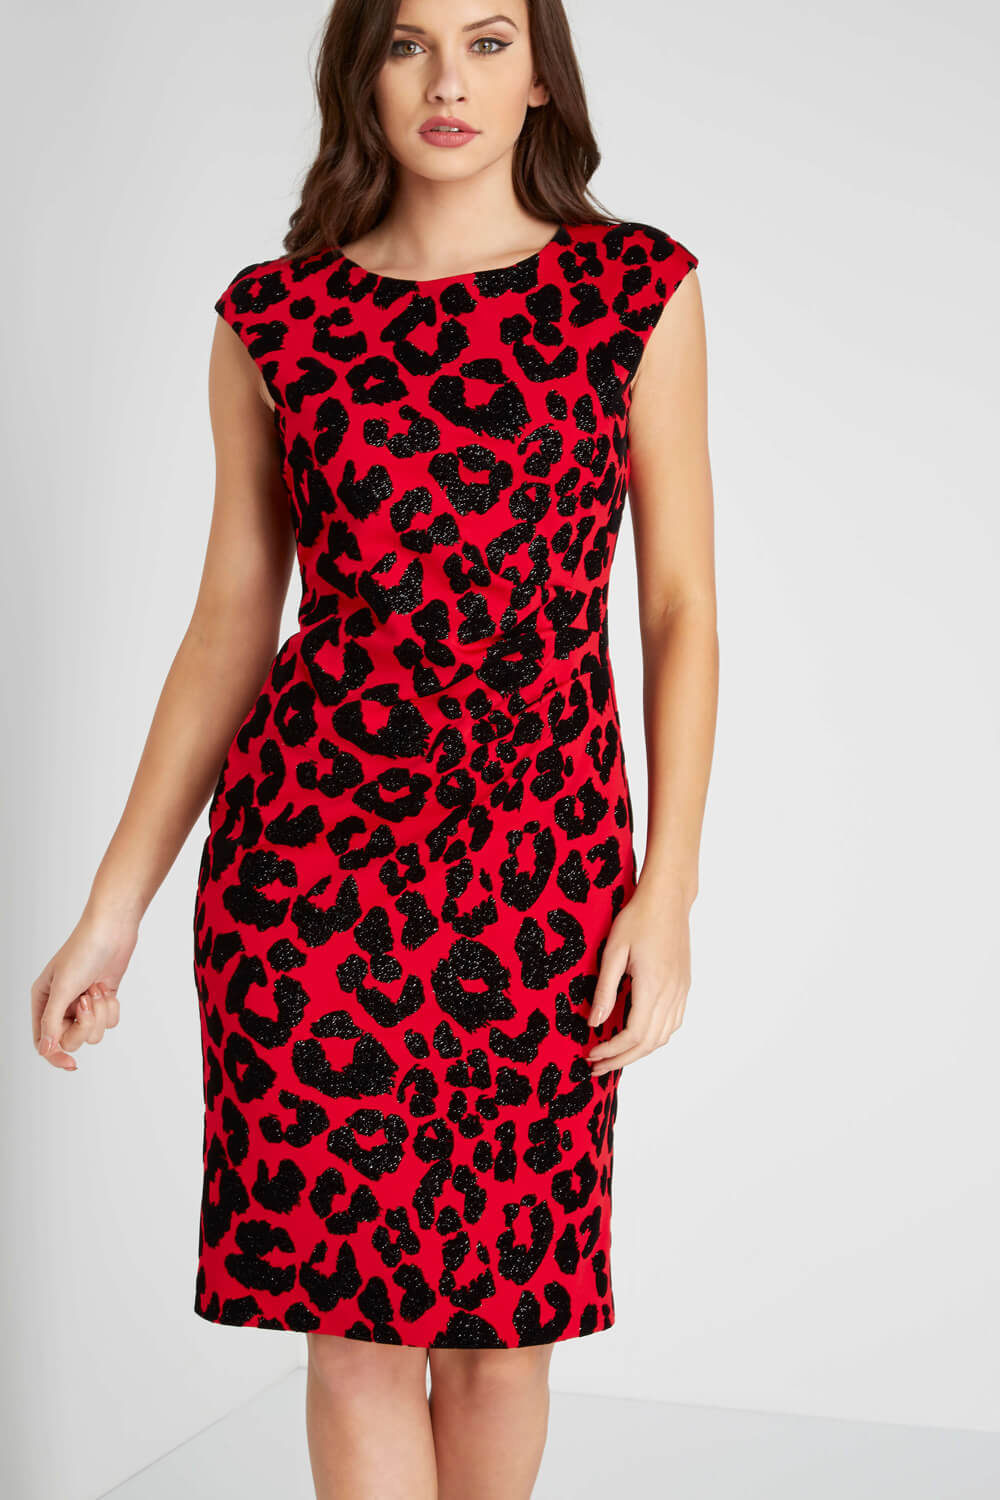 roman originals leopard print dress